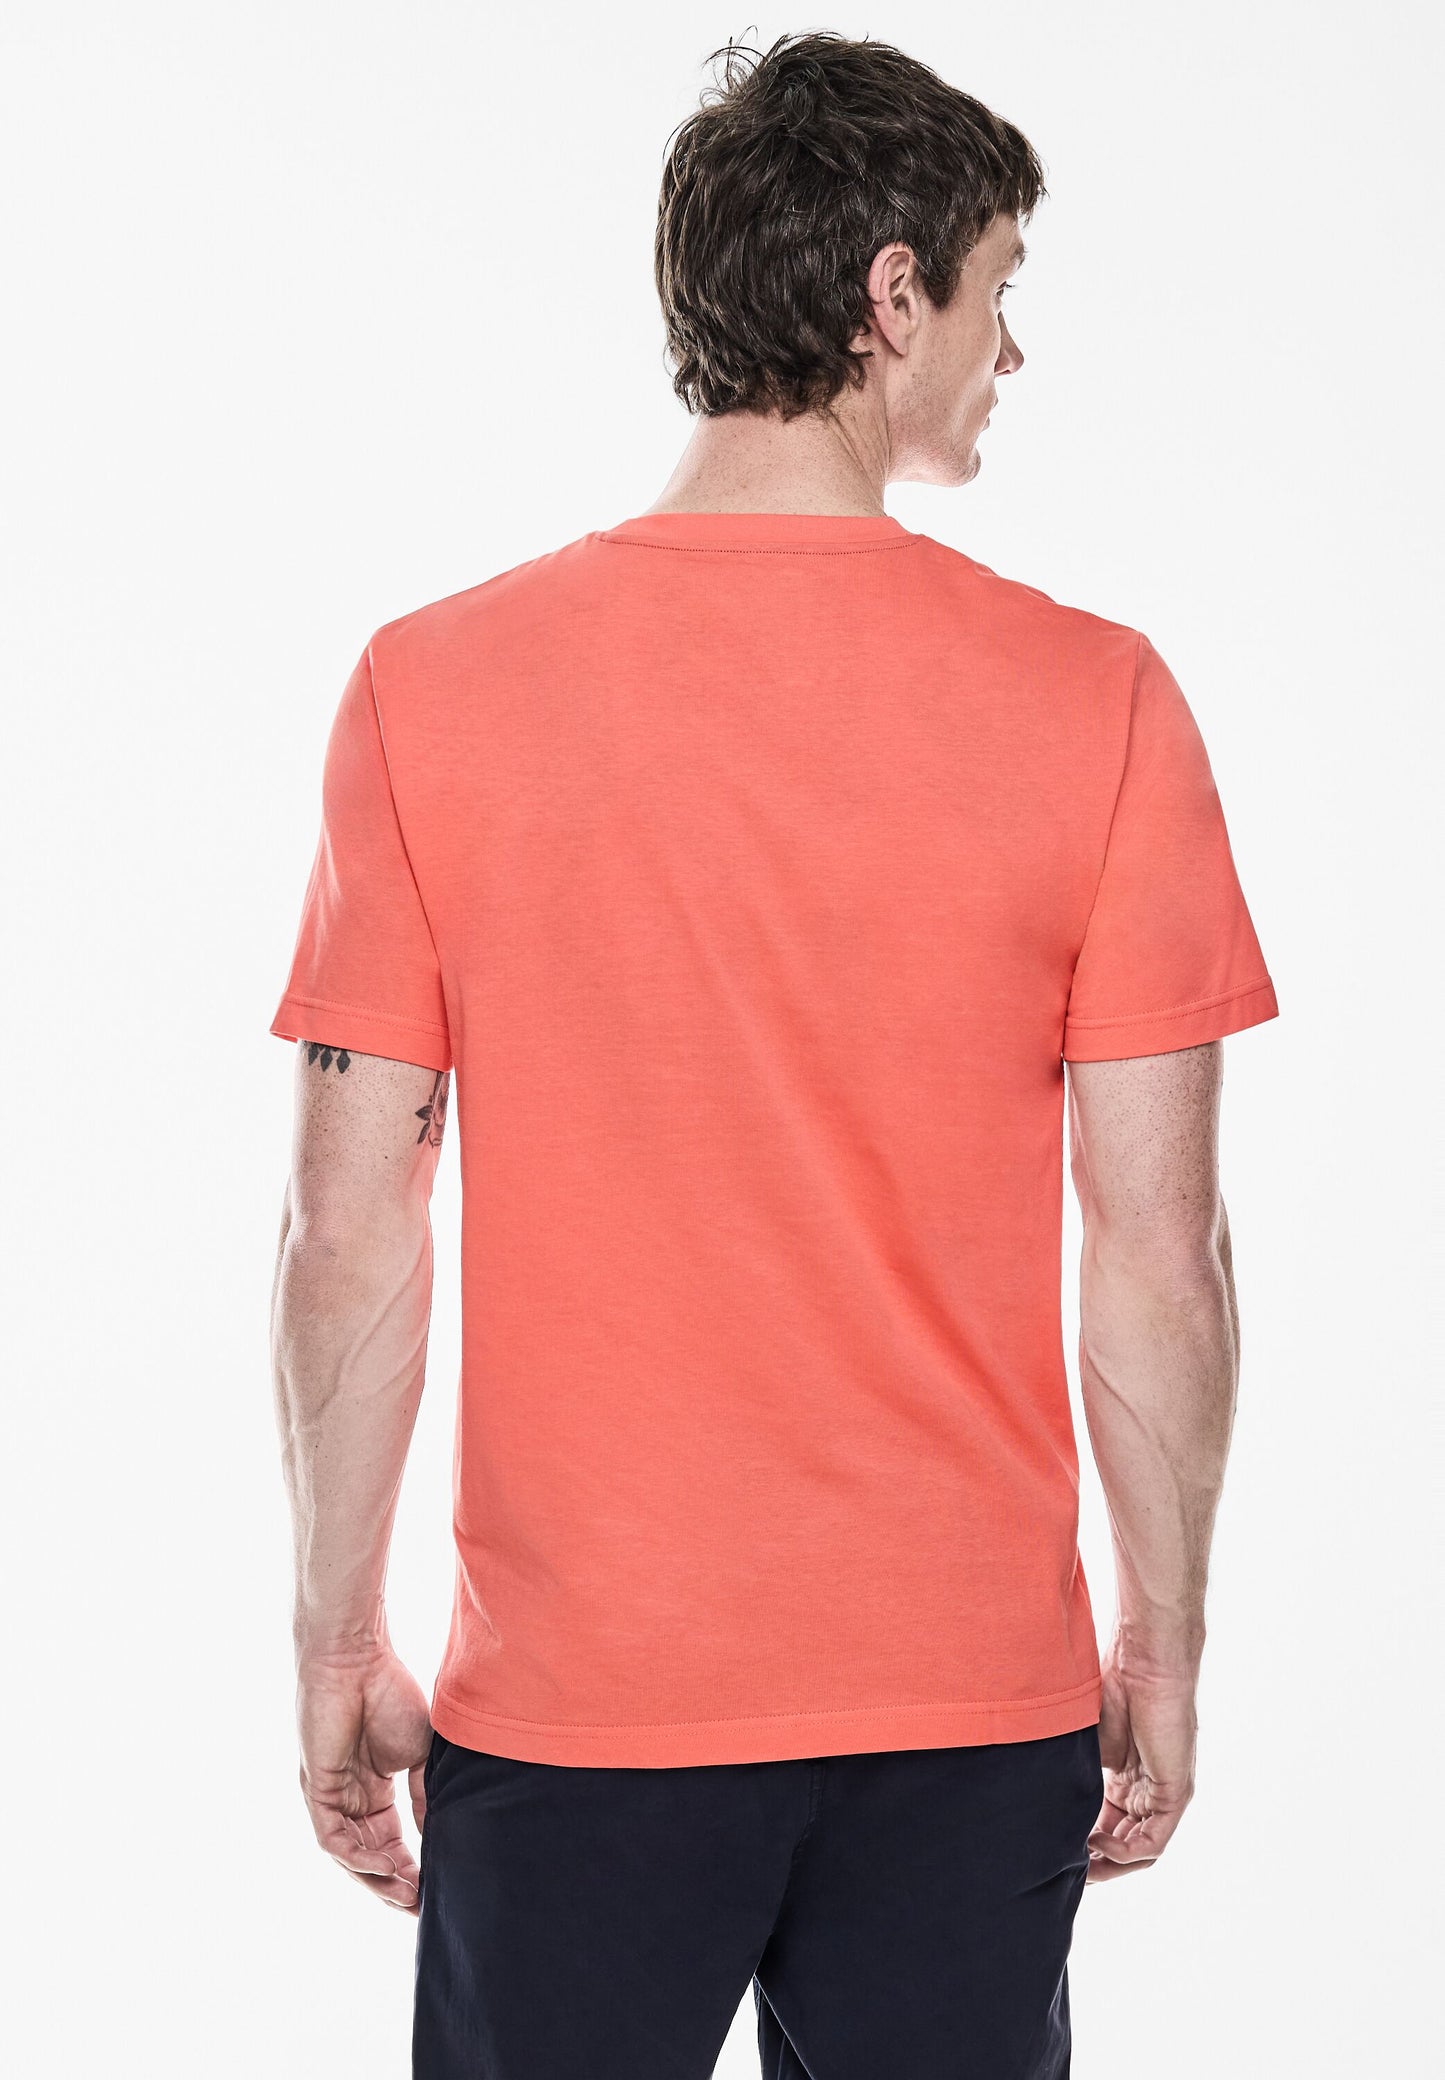 Street One MEN - Herren T-Shirt mit Chestprint - sea coral red